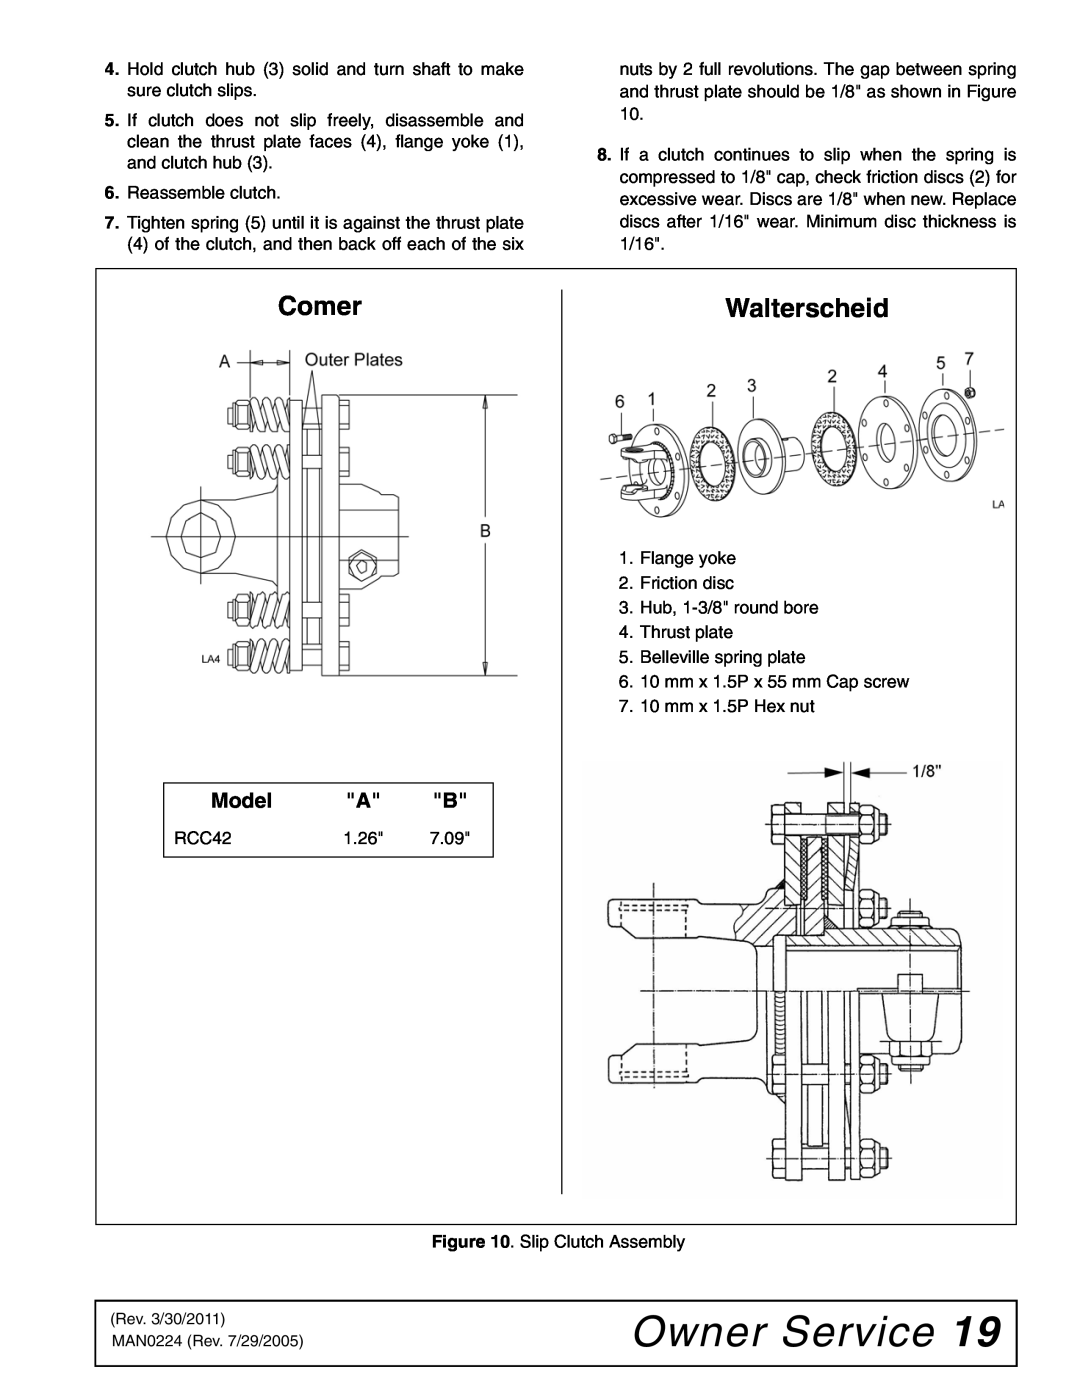 Woods Equipment RCC42 manual Owner Service, Comer, Walterscheid, Model 